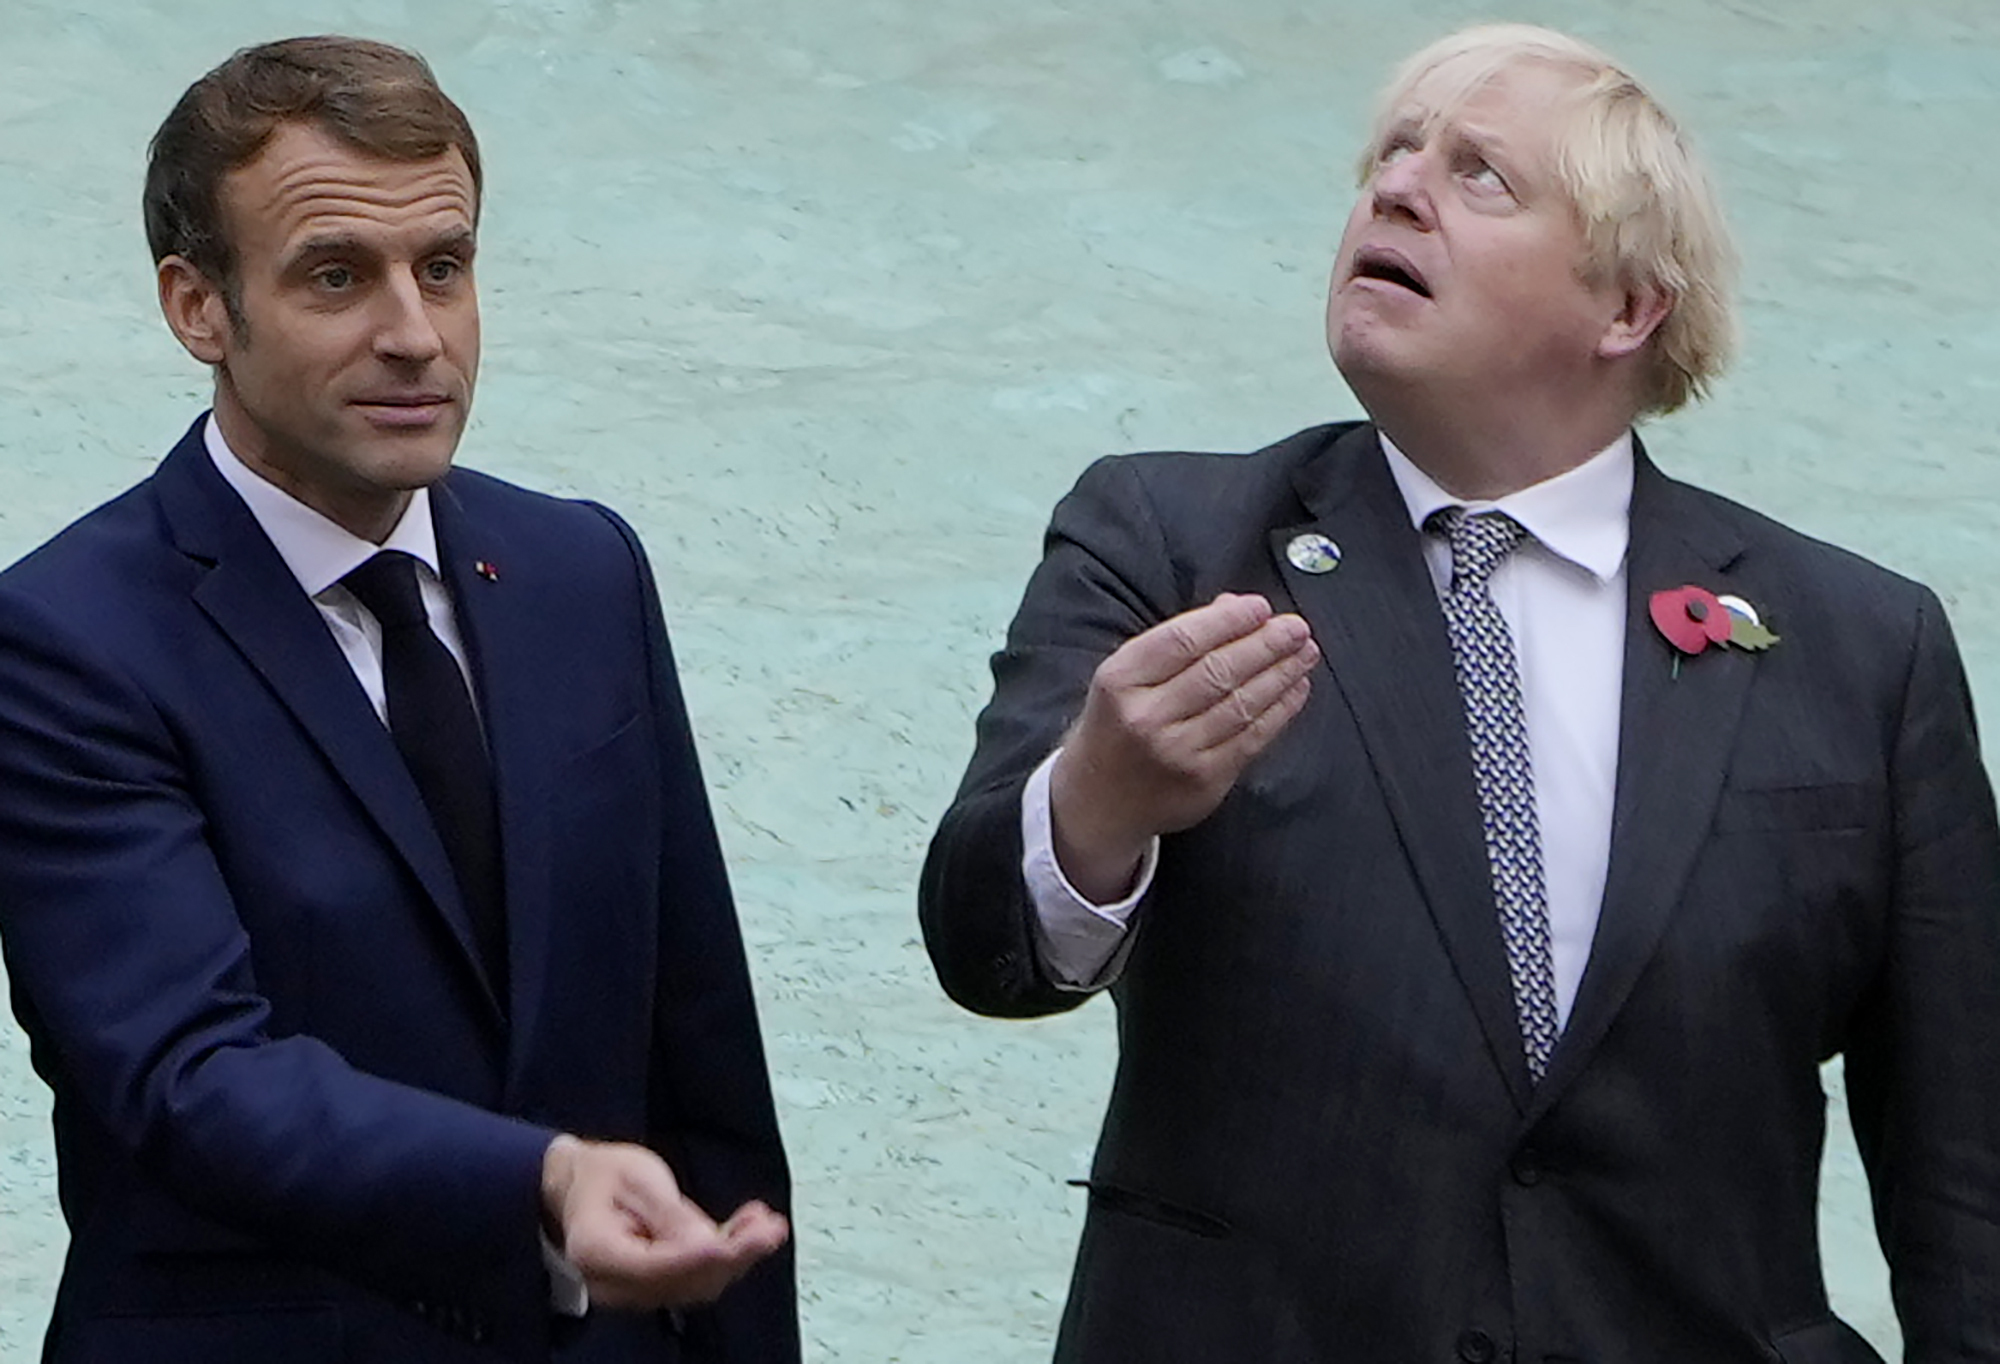 La reunión entre Macron y Johnson evidencia la profundidad de la crisis franco-británica